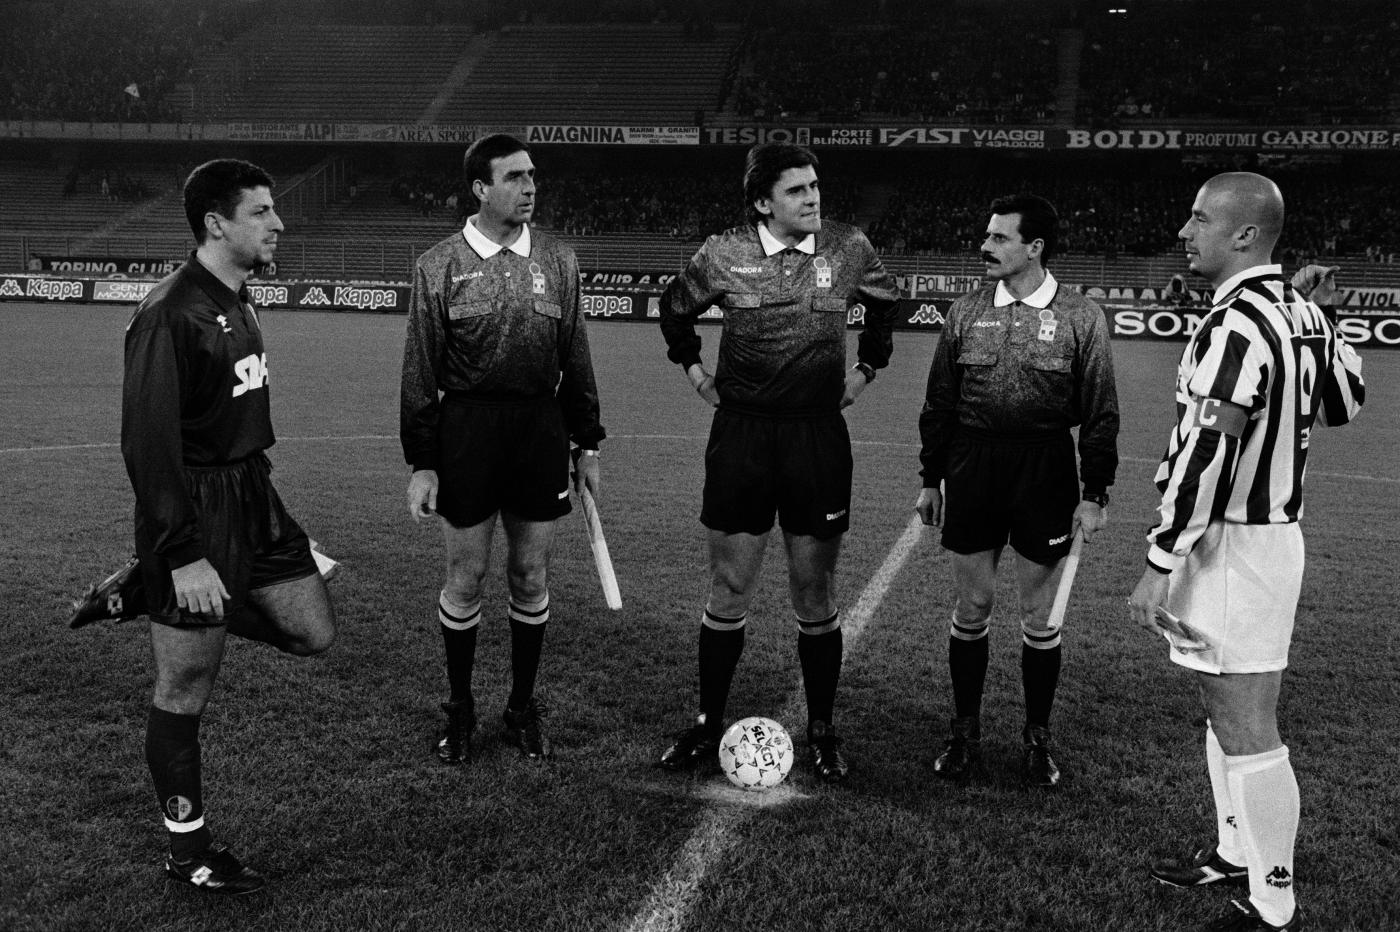 Serie_A_1995-96_-_Juventus_vs_Torino_-_Rizzitelli,_Nicchi_e_Vialli.jpg